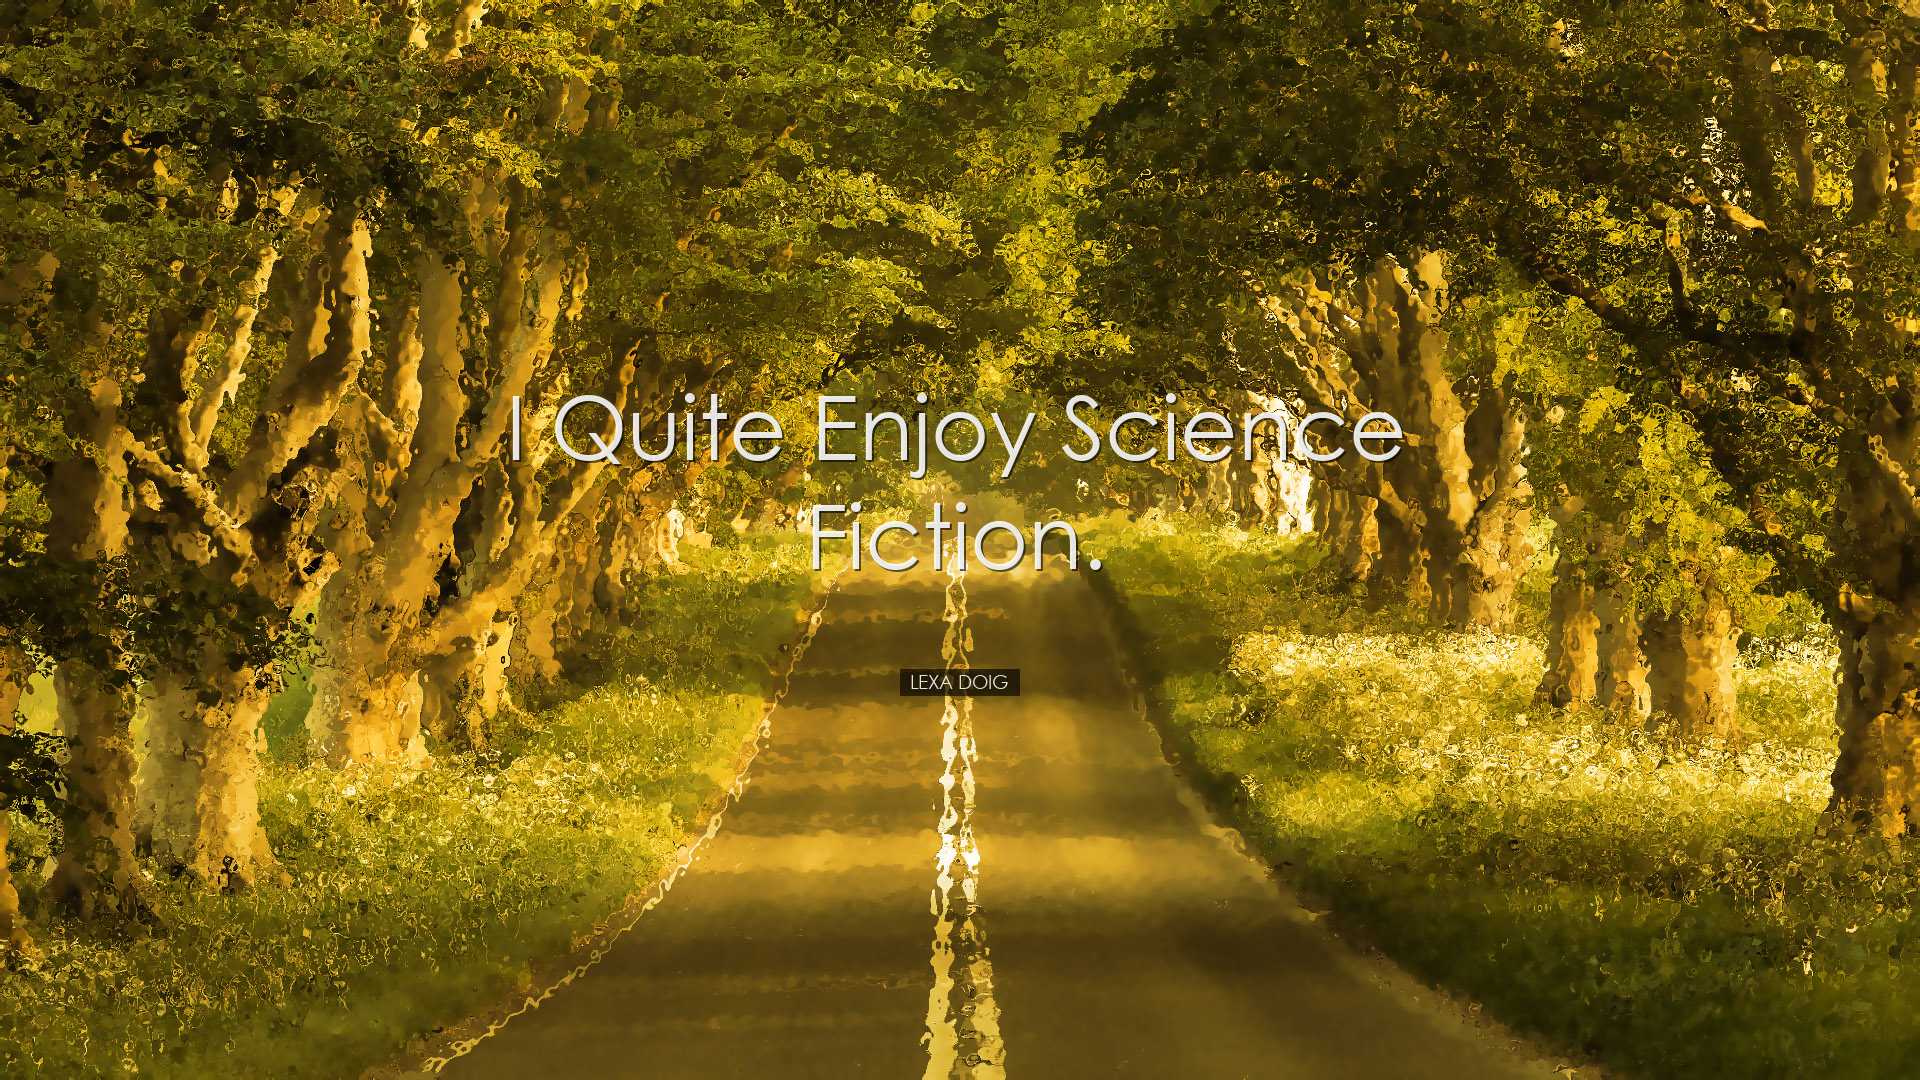 I quite enjoy science fiction. - Lexa Doig